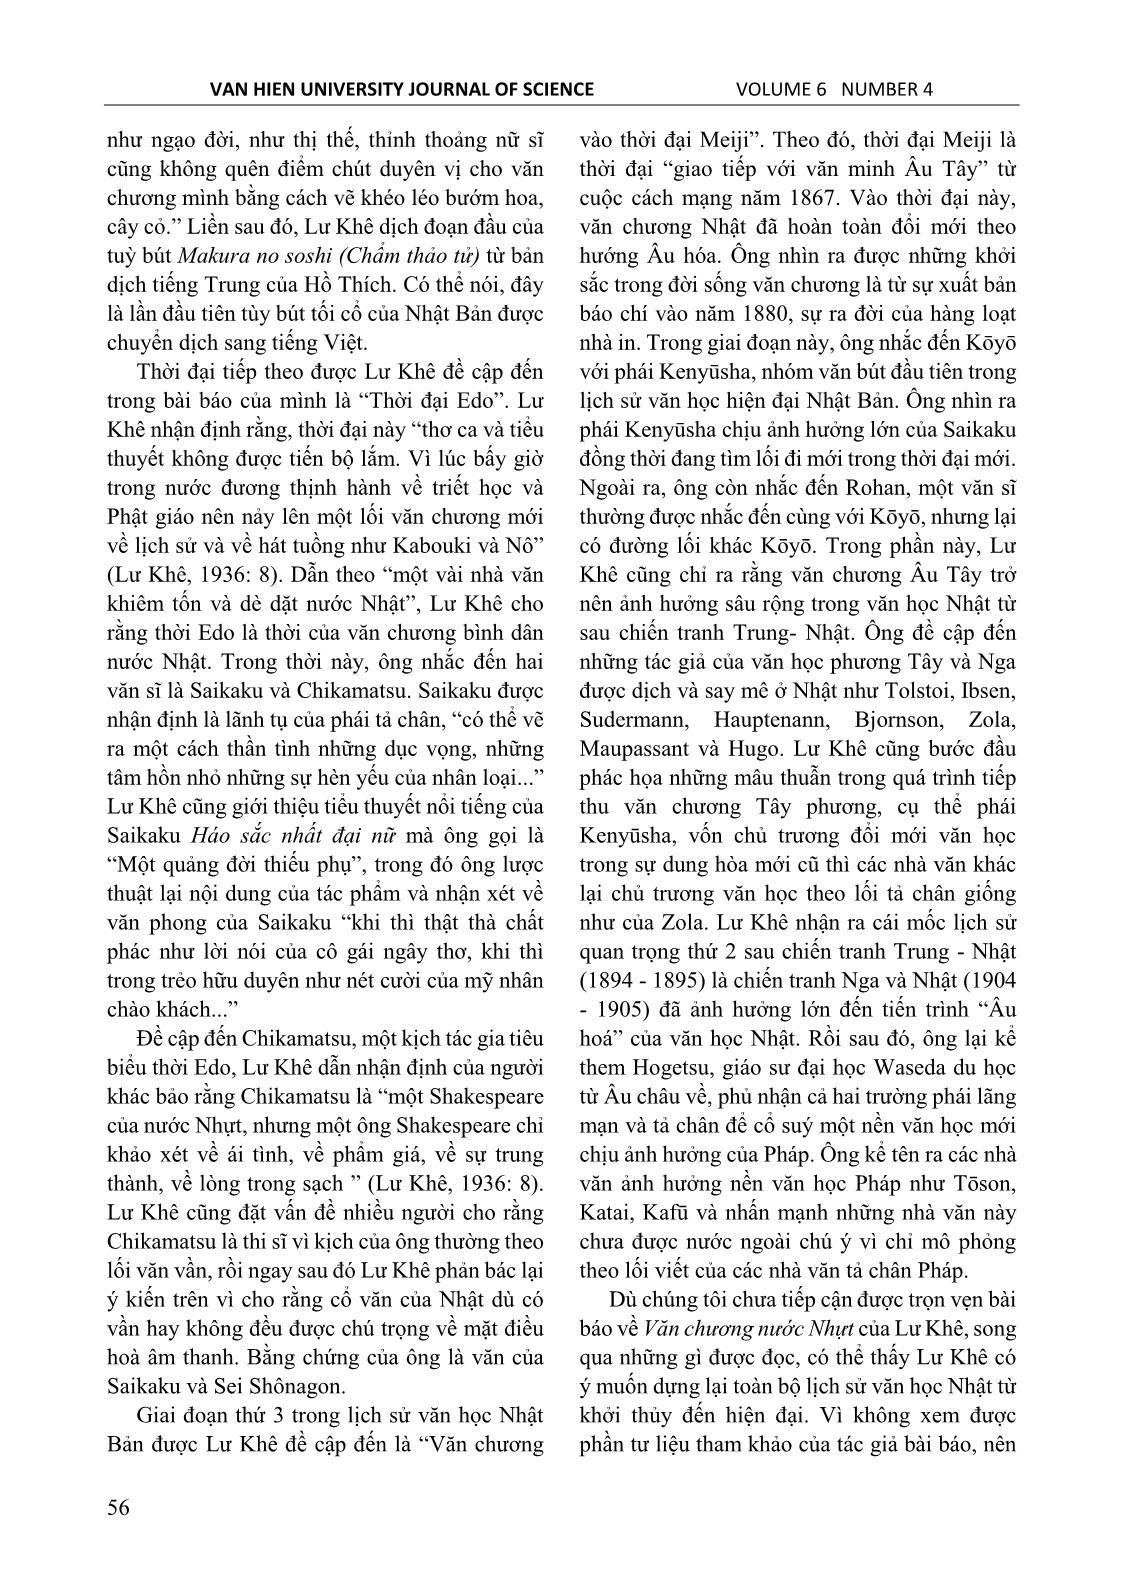 Lư Khê và bài báo đầu tiên ở nam kỳ giới thiệu văn học Nhật Bản trang 4